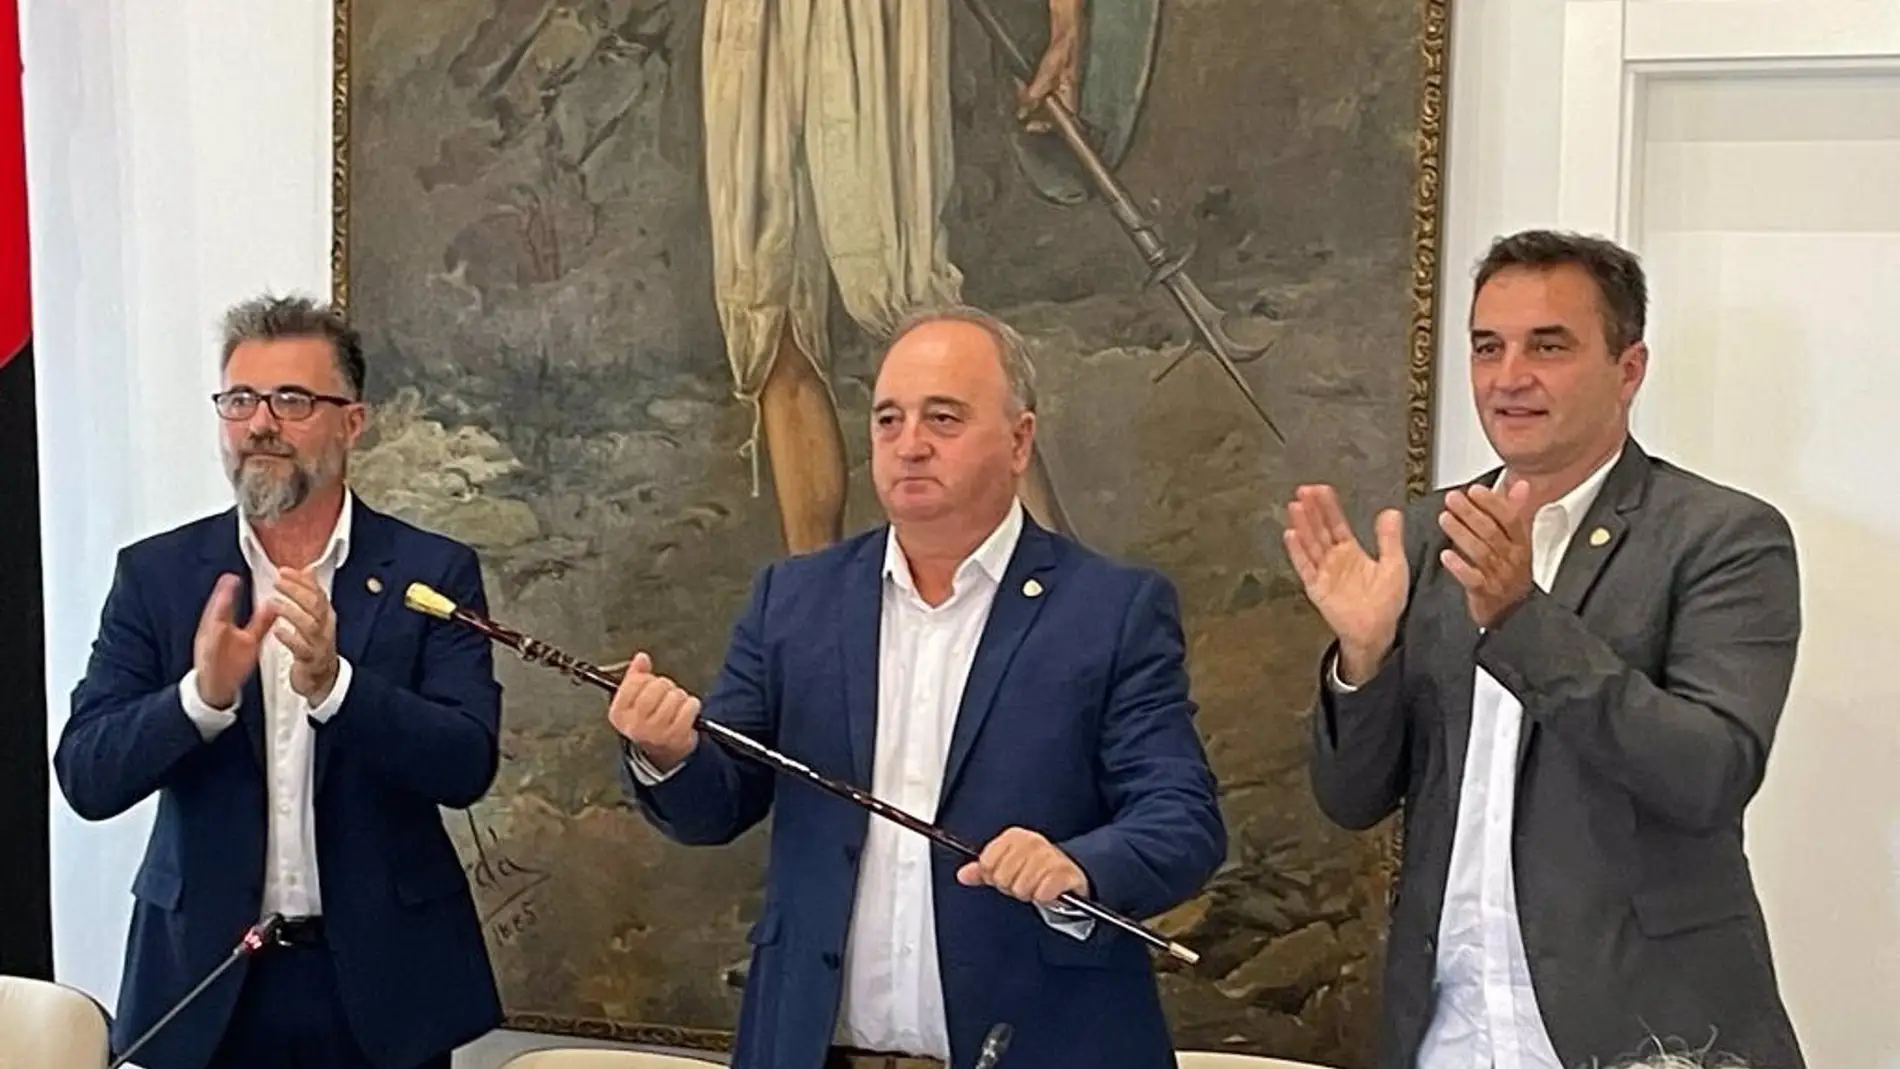 Andrés Nevado de Unió Mollera Pollencina (UMP), flanqueado por David Alonso y Tomeu Cifre, en su toma de posesión como alcalde de Pollença